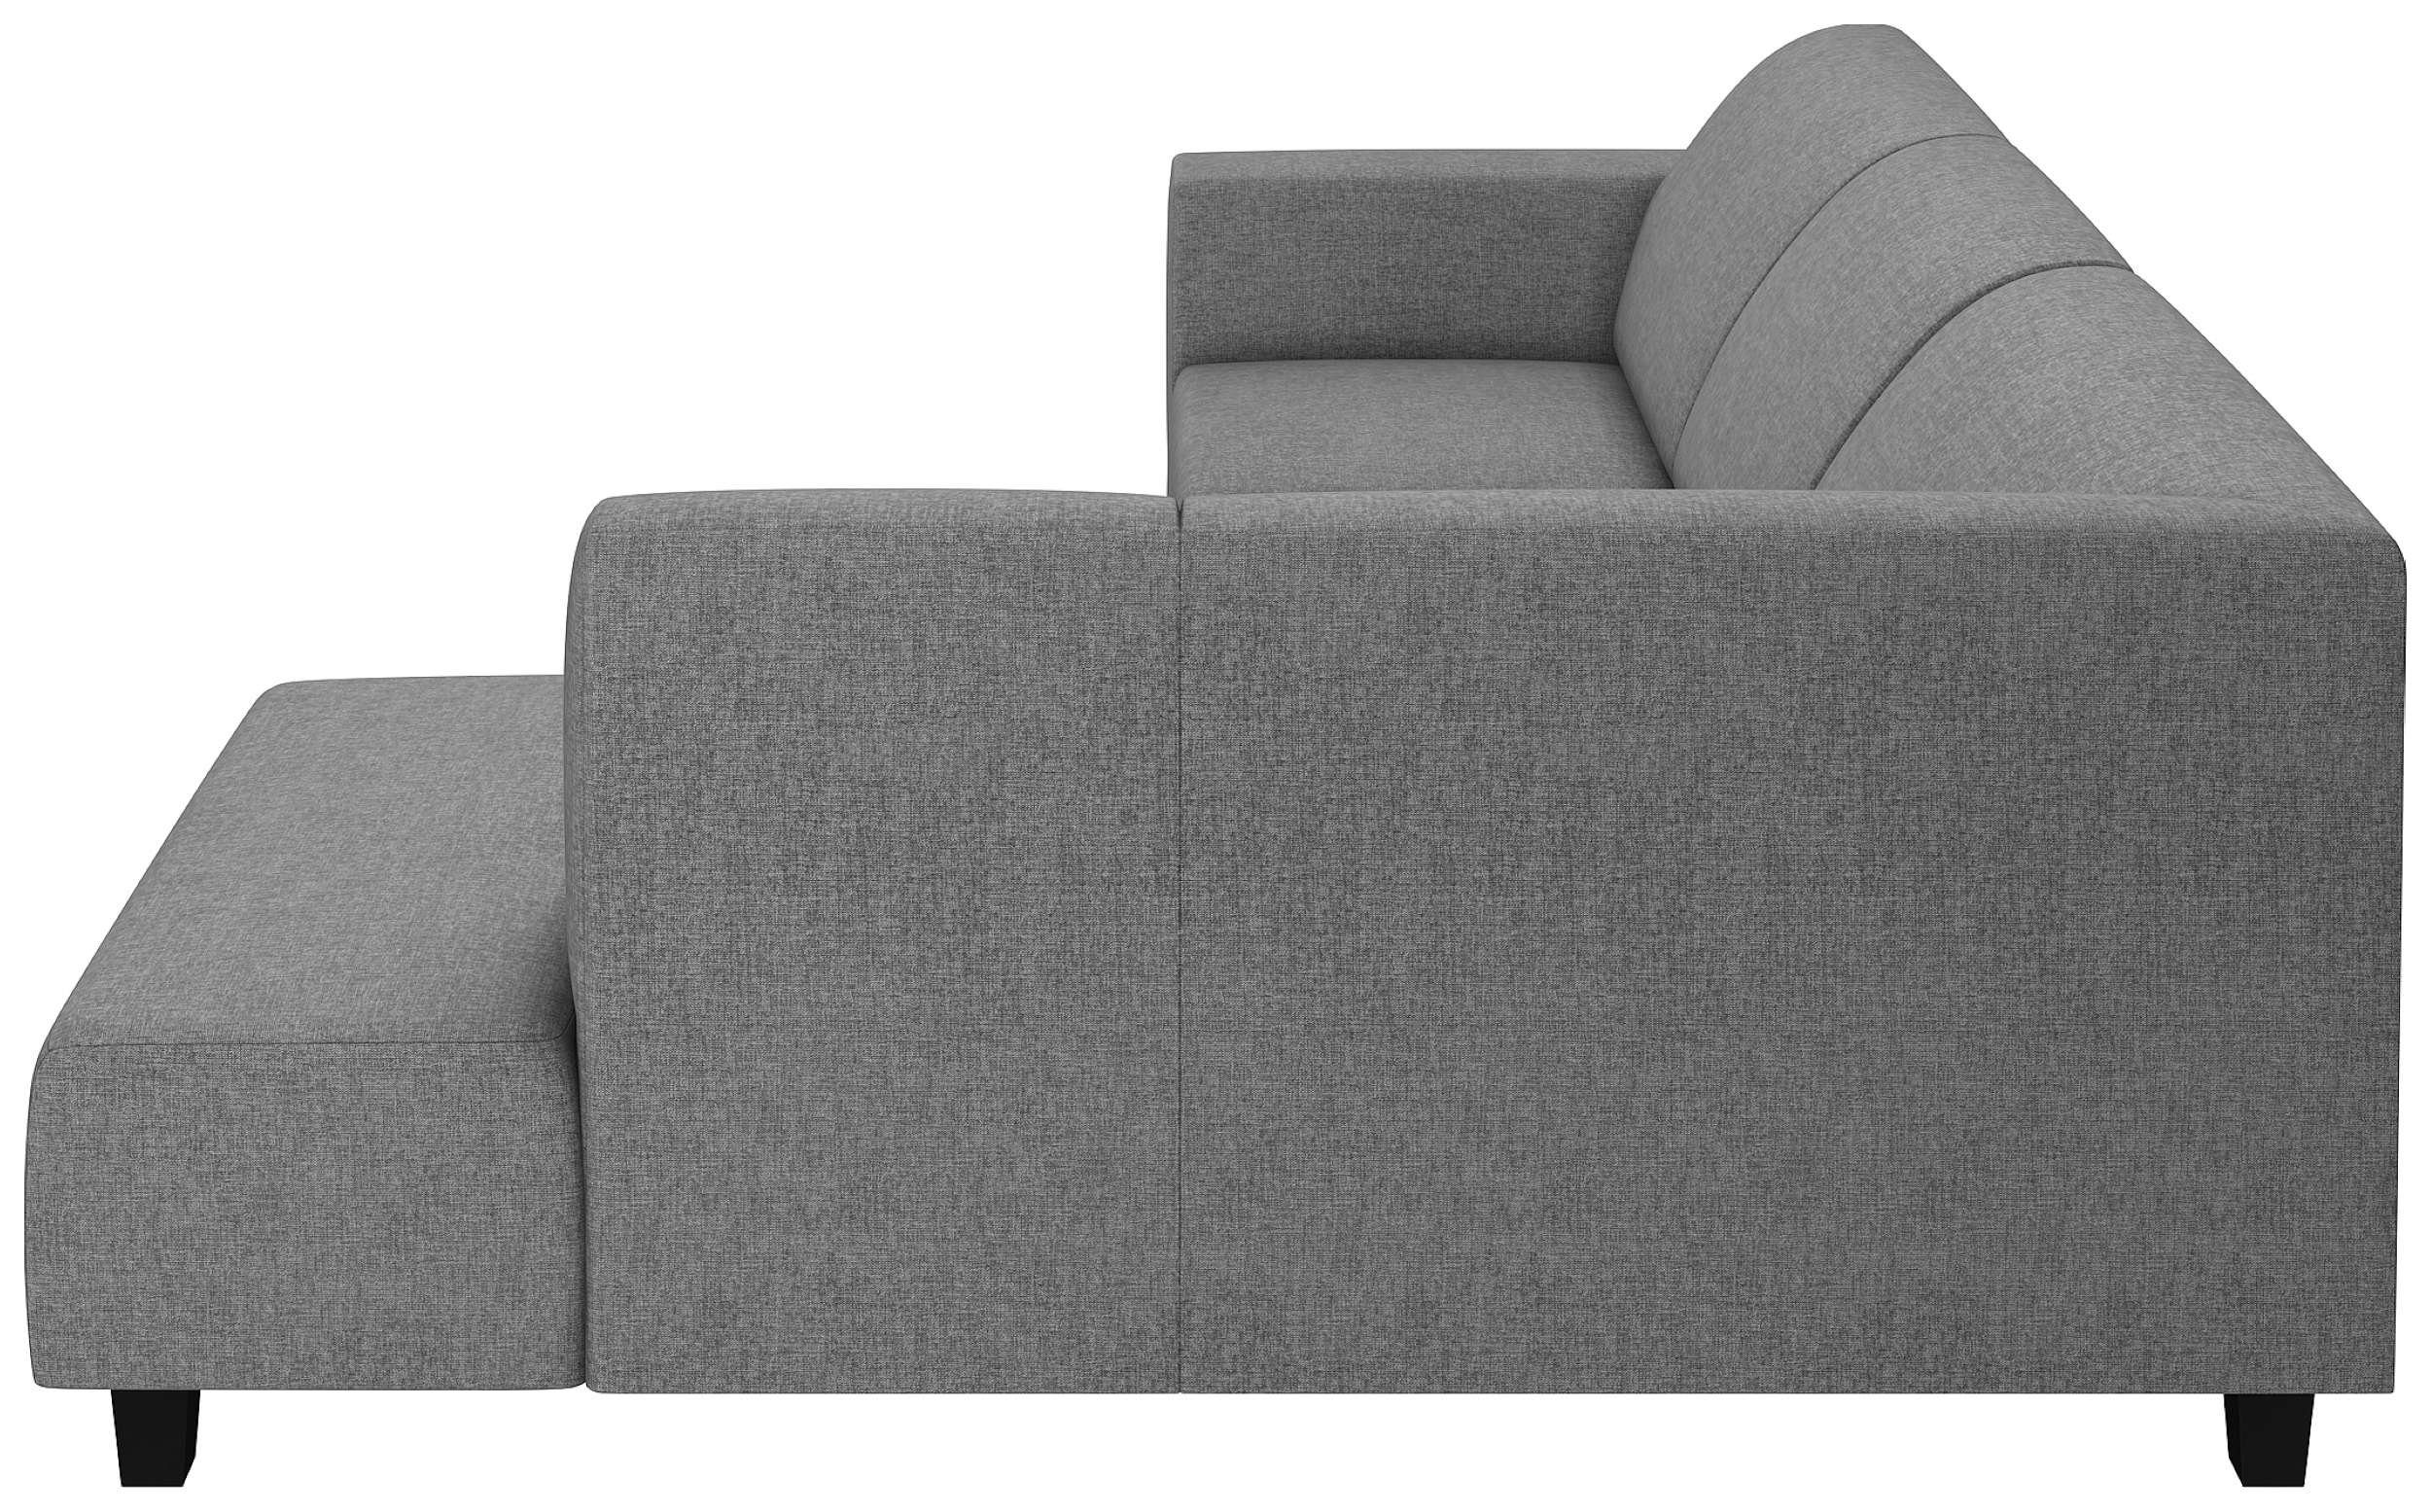 mane Ecksofa frei Stylefy Eckcouch, bestellbar, mit Raum Sitzkomfort, Design, Modern oder stellbar, rechts links Einar, im Rückenlehne L-Form,